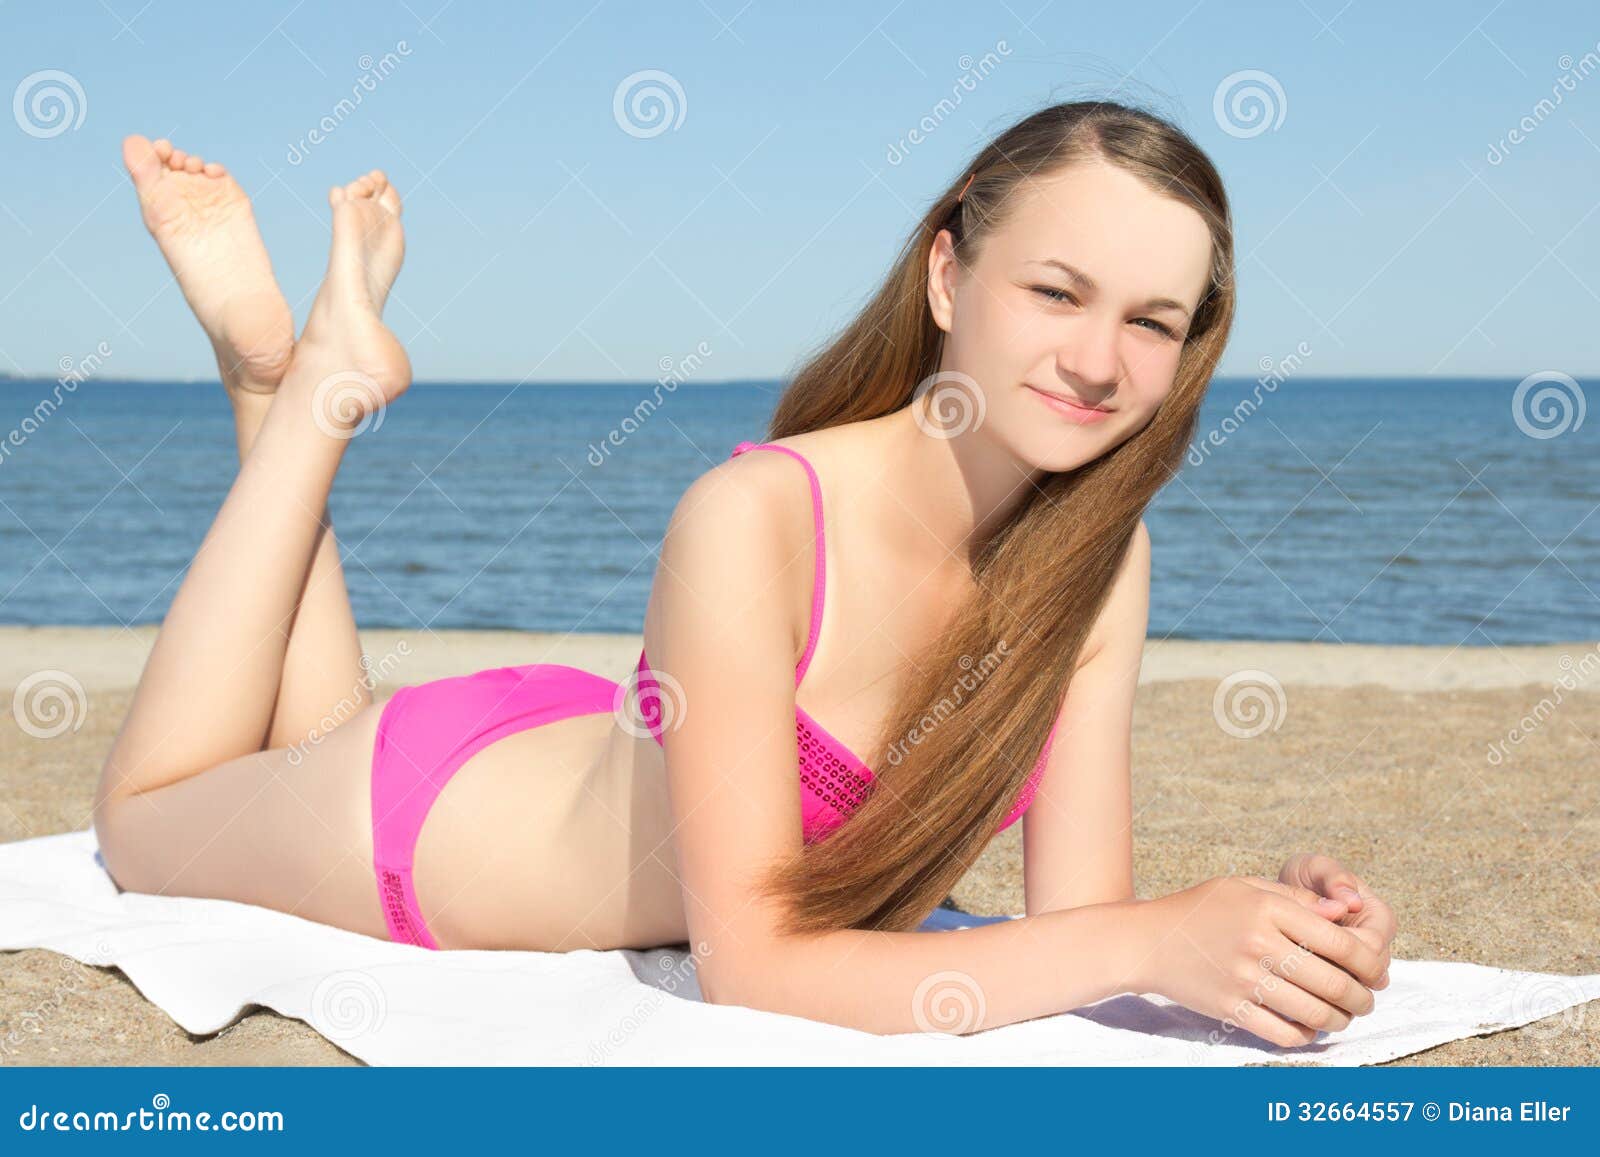 Adolescente No Biquini Cor De Rosa Que Encontra Se Na Praia Imagem De Stock Imagem De Retrato